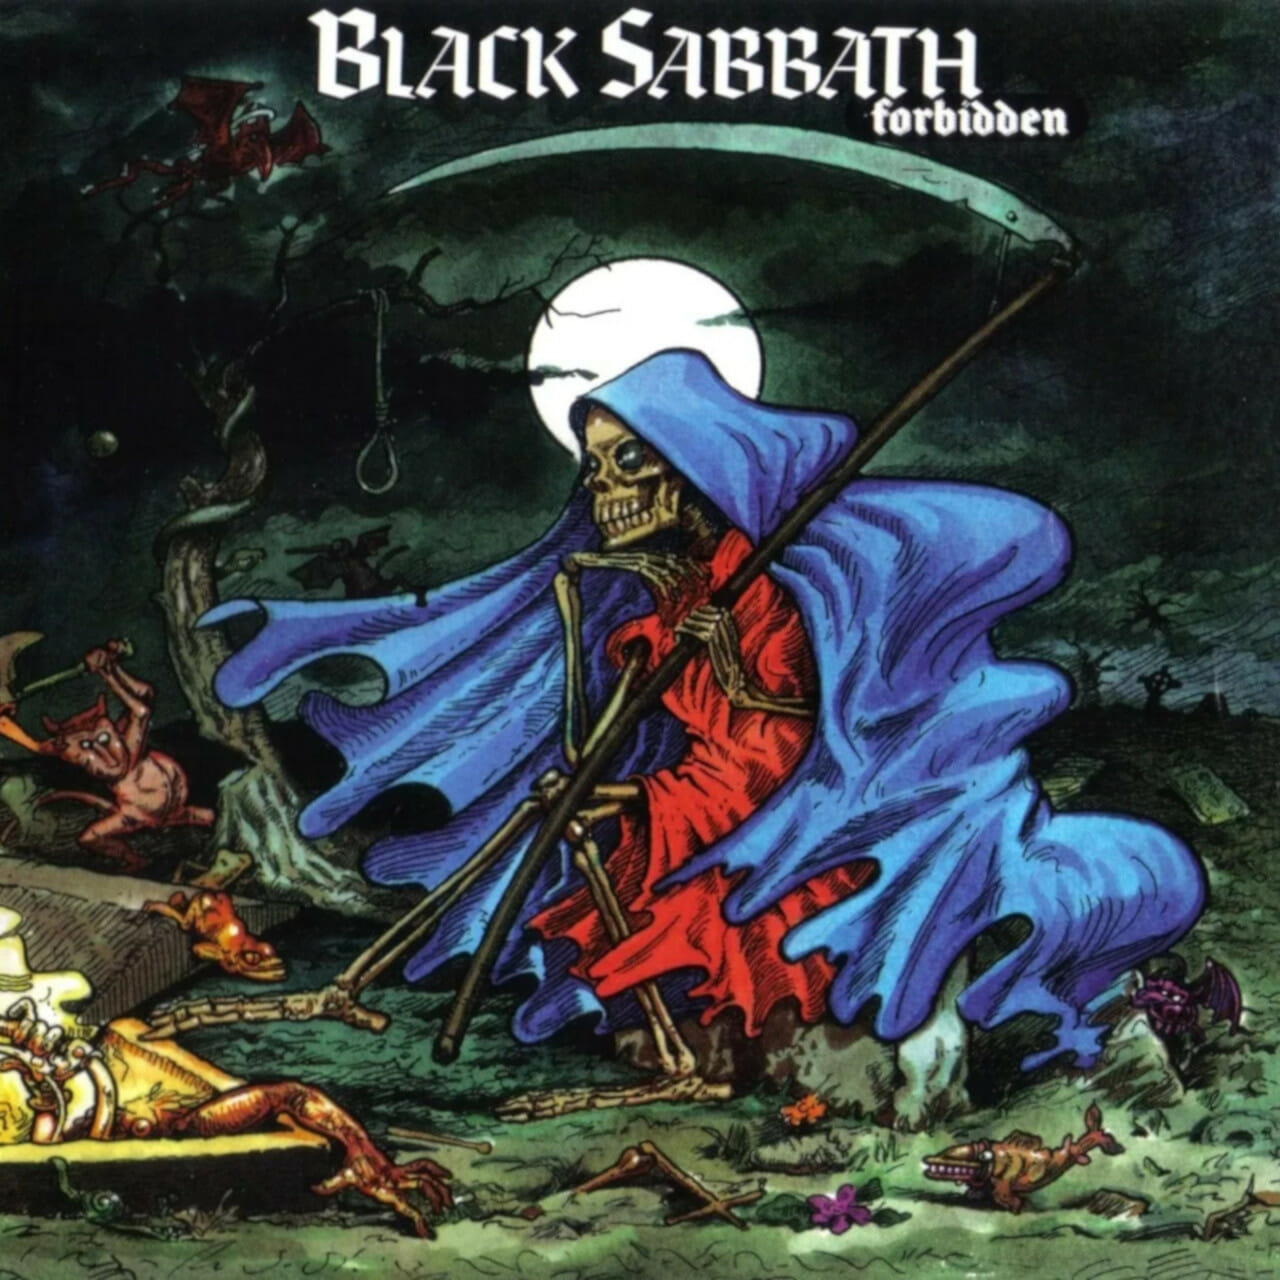 Black Sabbath - prohibido